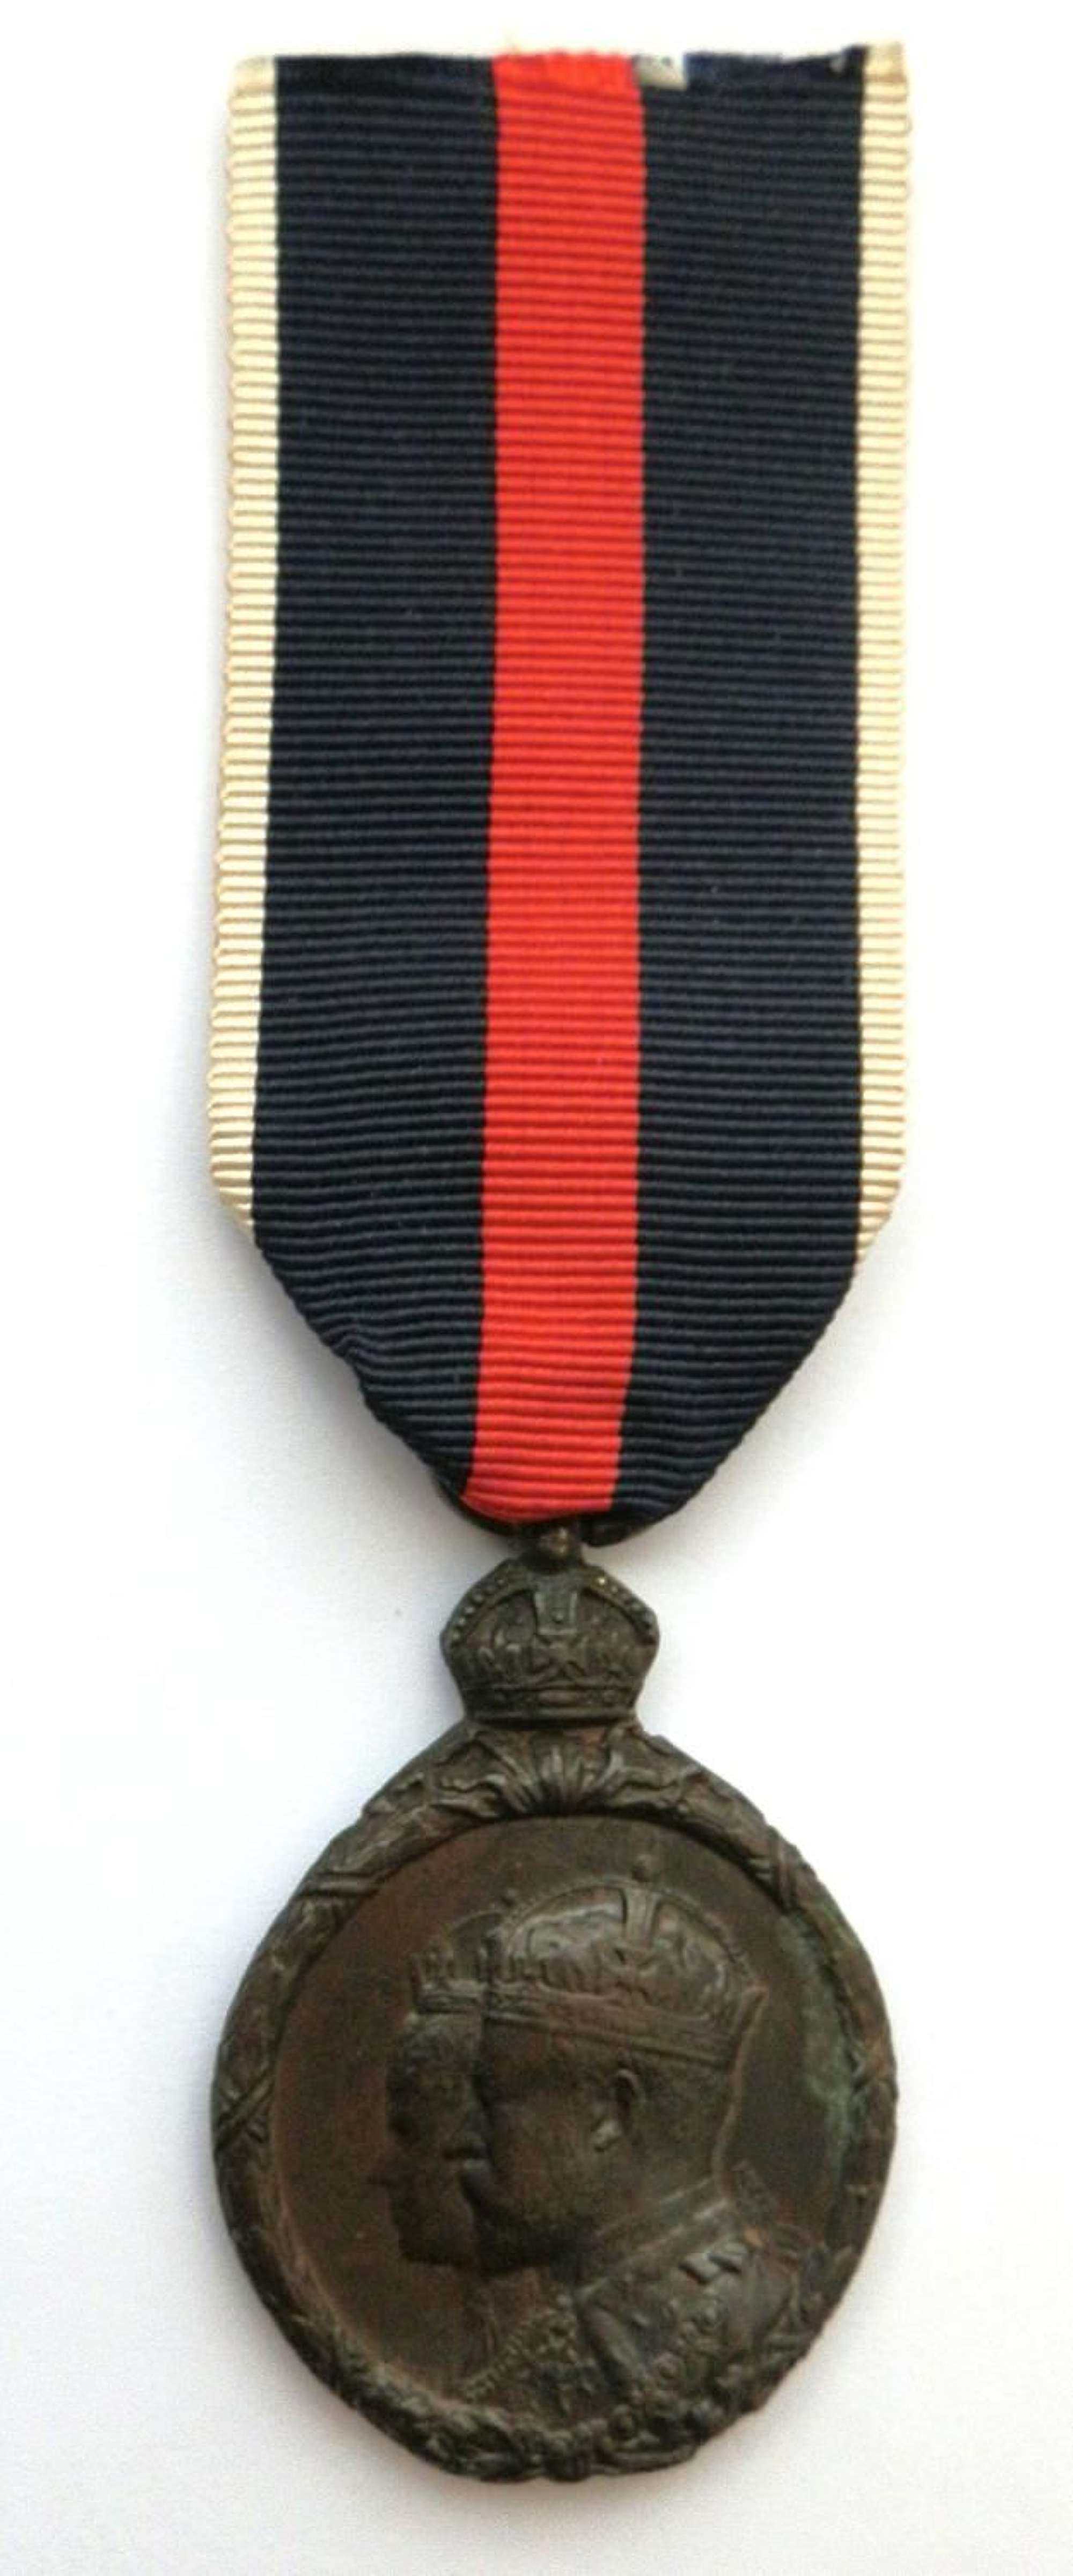 Coronation Medal 1902